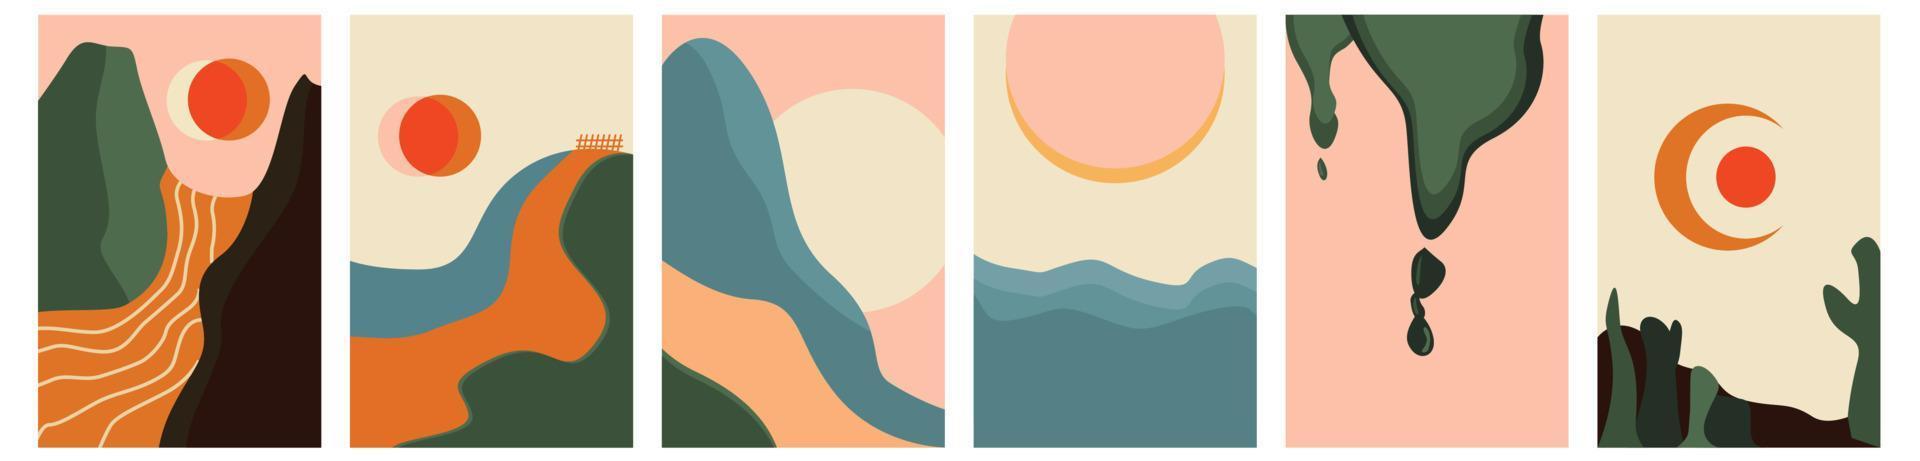 vista para a montanha, rio. colinas, nuvens, sol, lua. estilo de corte de papel. projeto abstrato liso. conjunto de seis ilustrações vetoriais na moda desenhadas à mão. fundo legal vetor